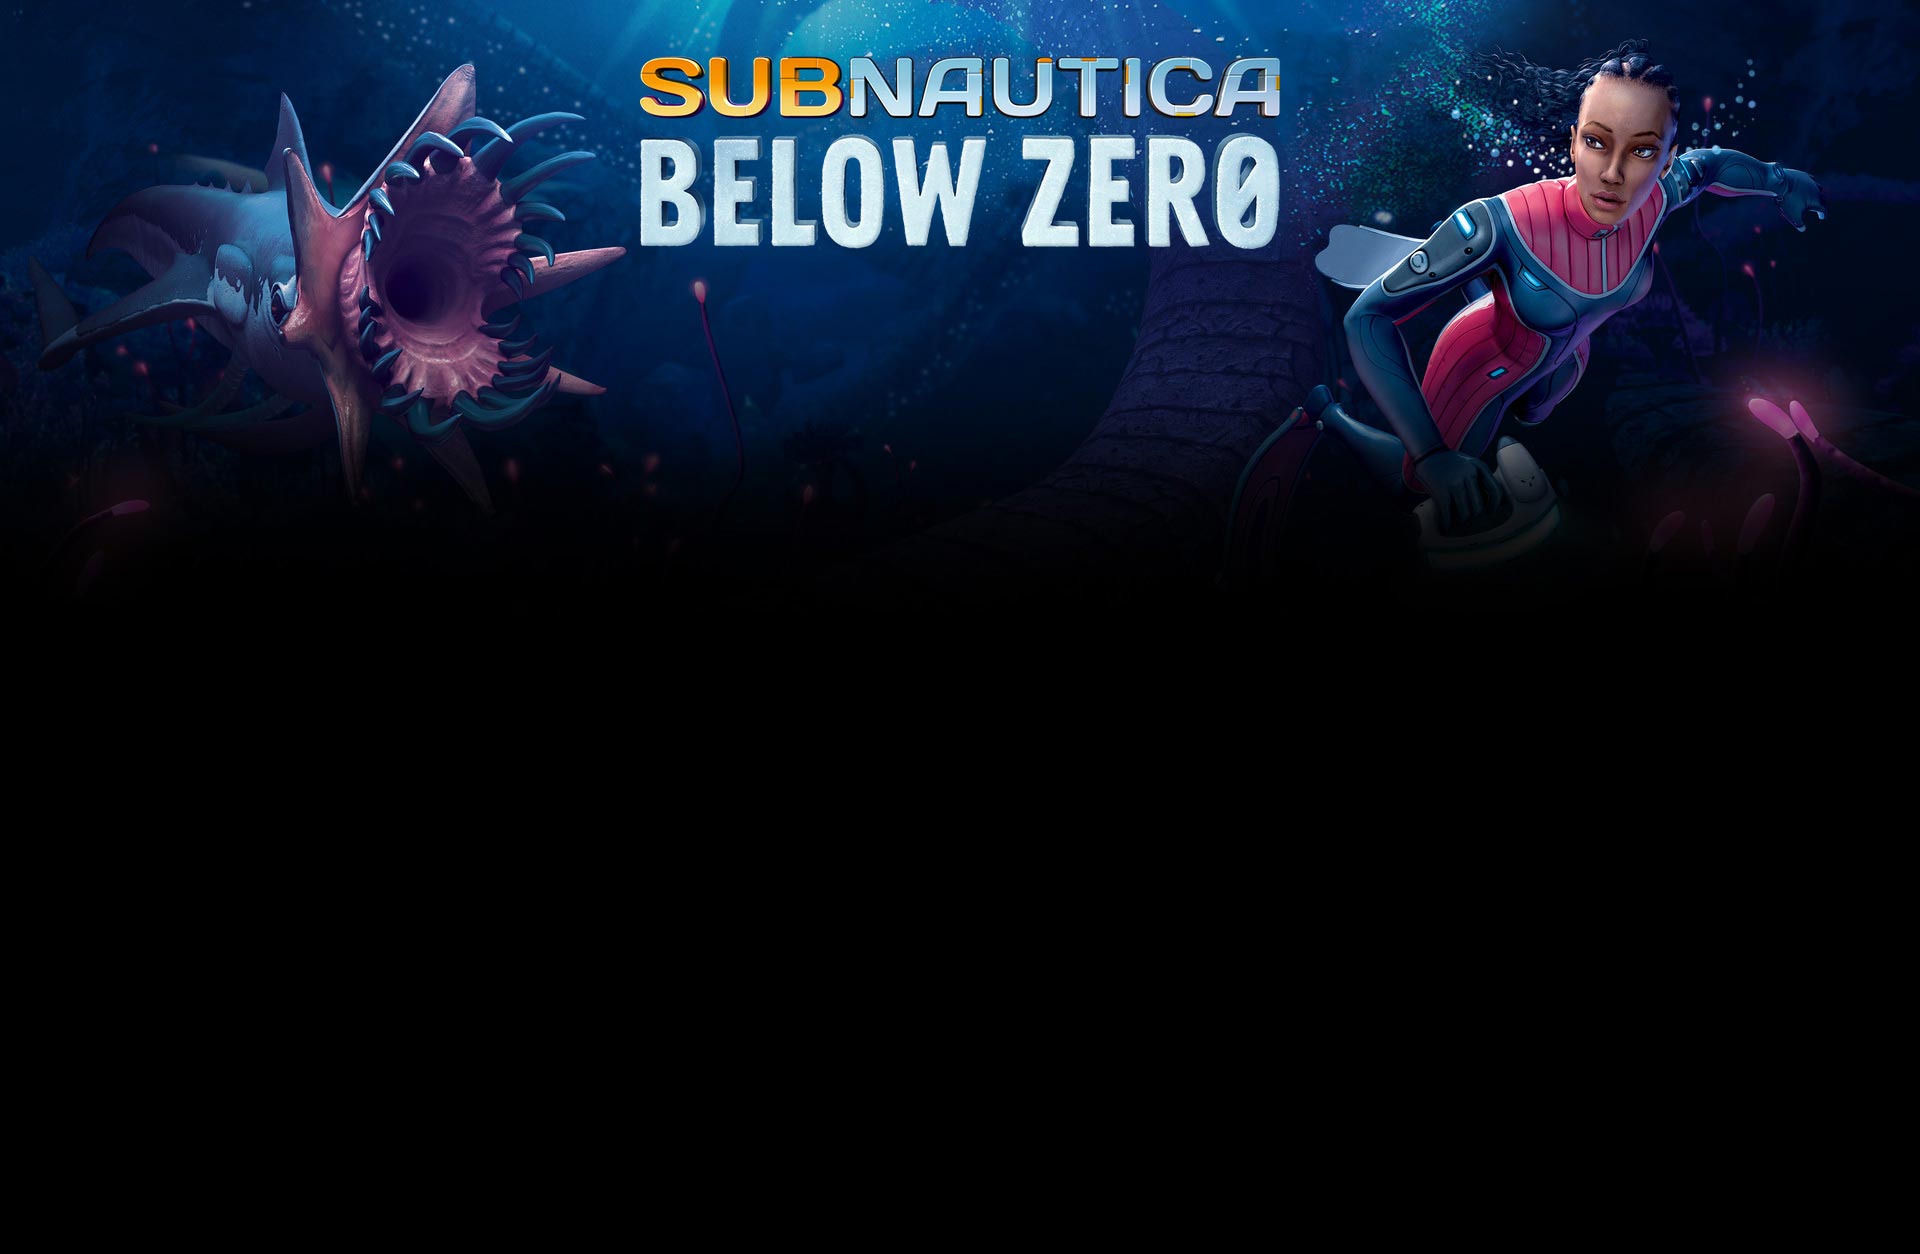 Subnautica: Below Zero system requirements